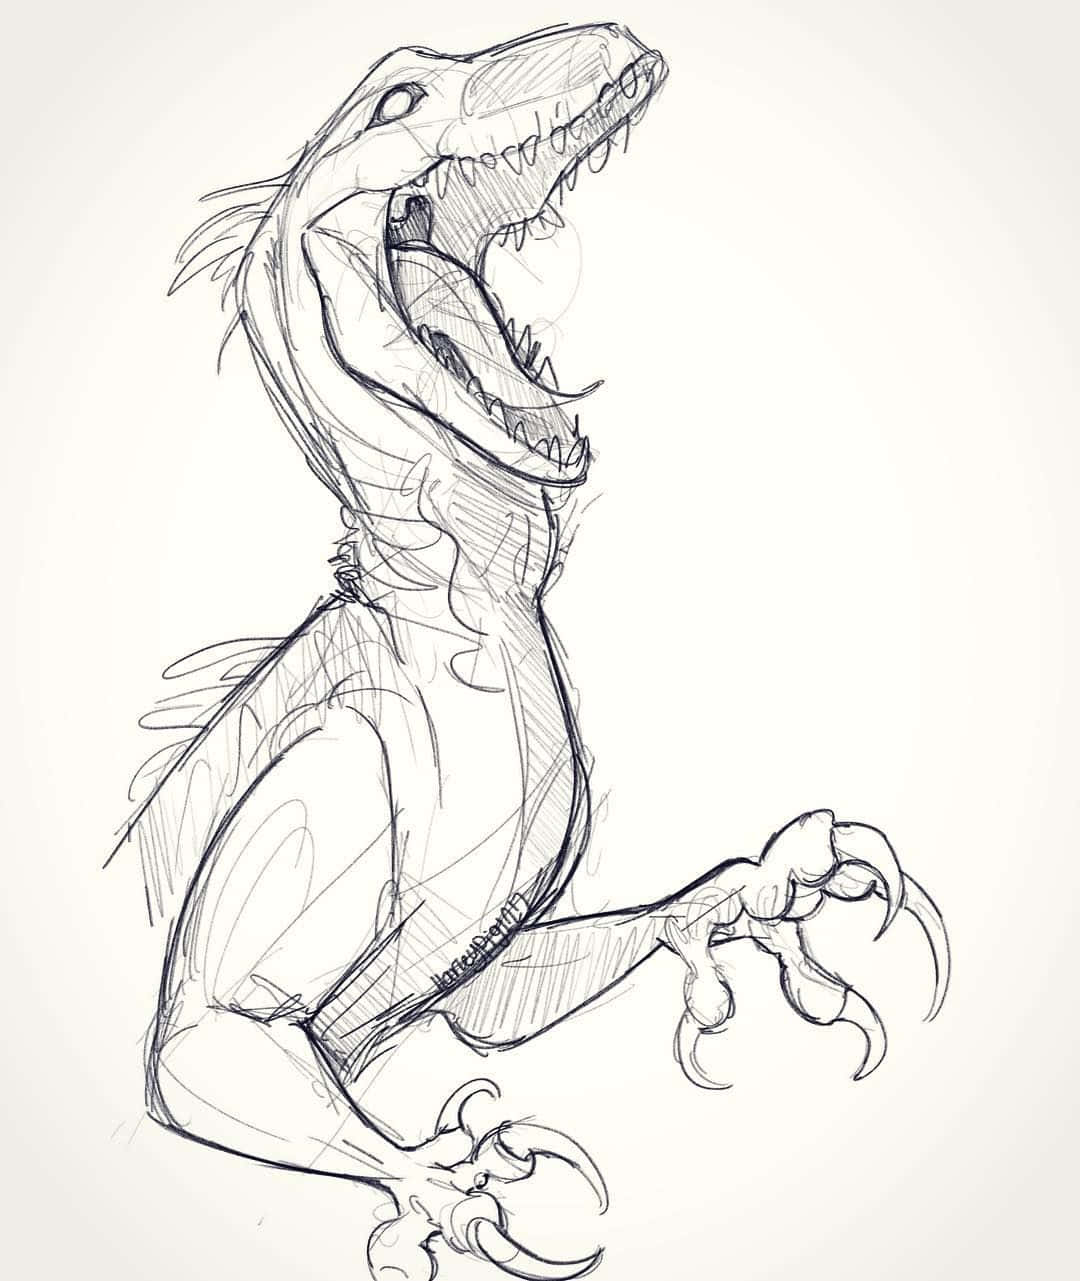 A fun dinosaur drawing of a friendly stegosaurus